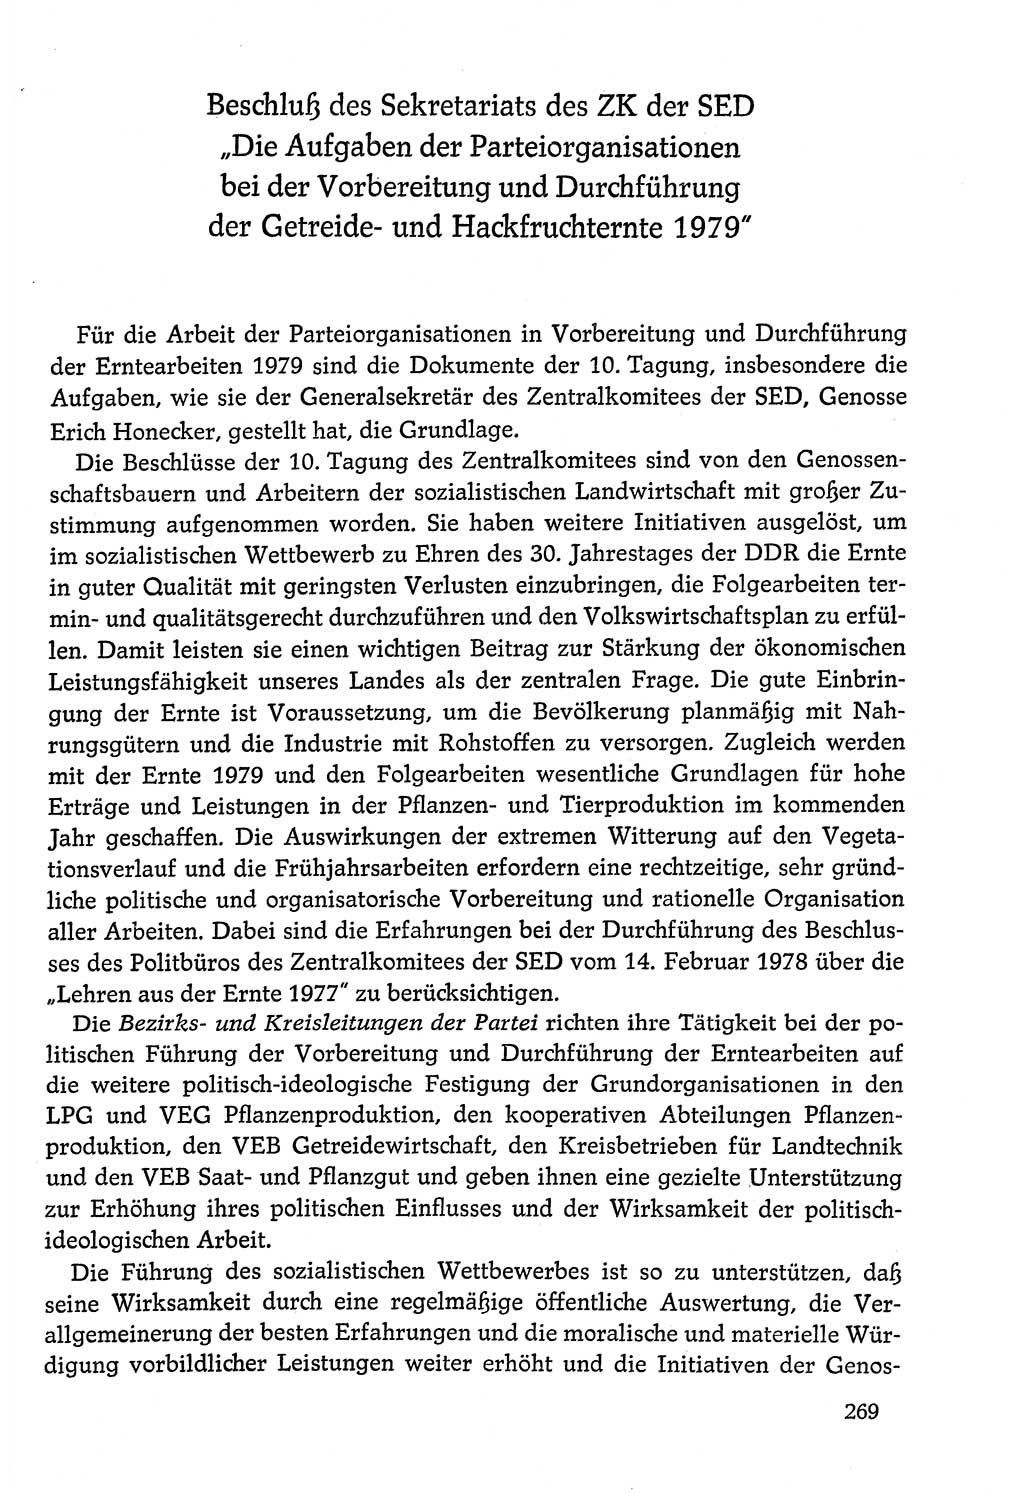 Dokumente der Sozialistischen Einheitspartei Deutschlands (SED) [Deutsche Demokratische Republik (DDR)] 1978-1979, Seite 269 (Dok. SED DDR 1978-1979, S. 269)